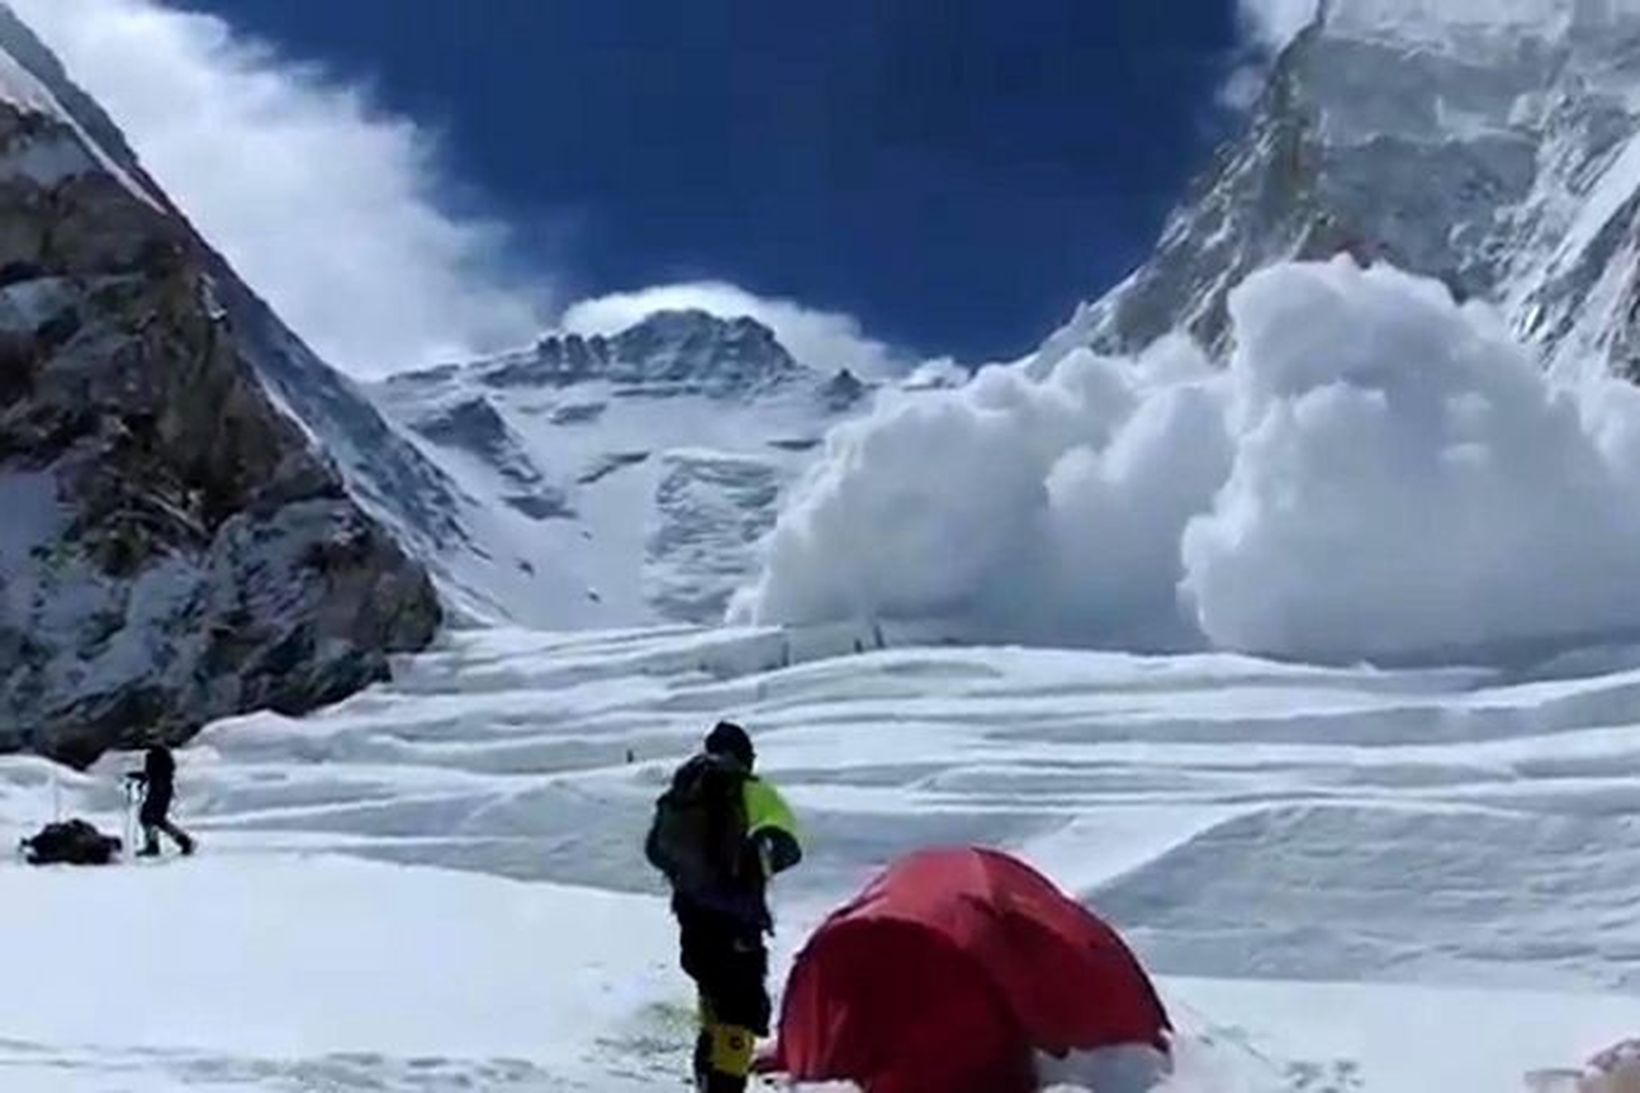 Snjóflóðið mannskæða í Everest.